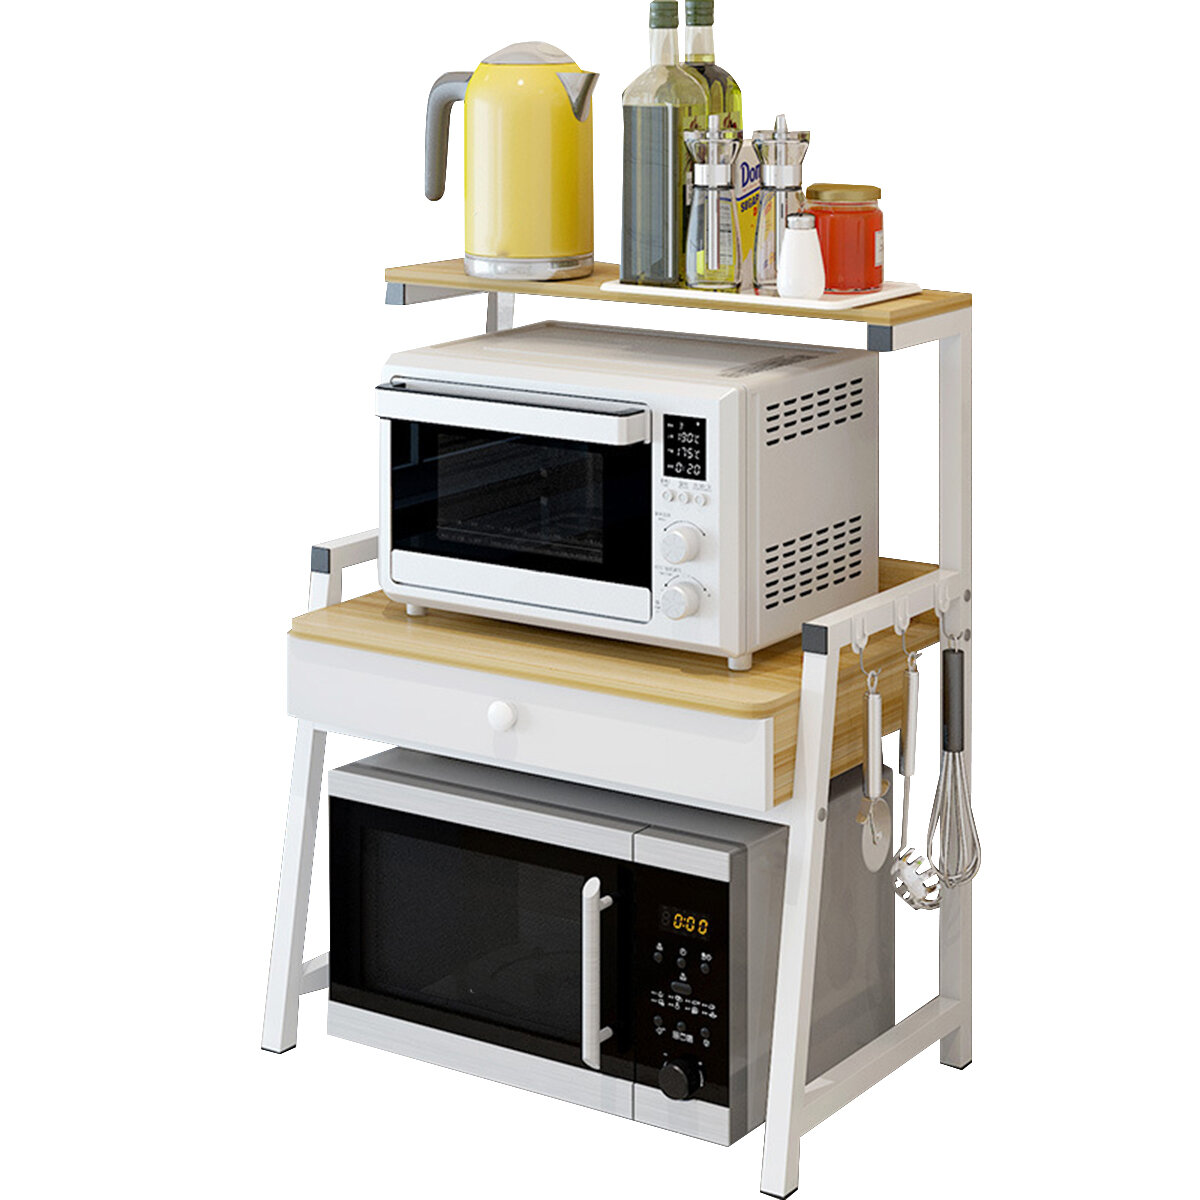 

2 Tiers Microwave Oven Rack Stand Storage Shelf Kitchen Storage Bracket Space Saving Kitchen Organizer with Drawer & Hoo